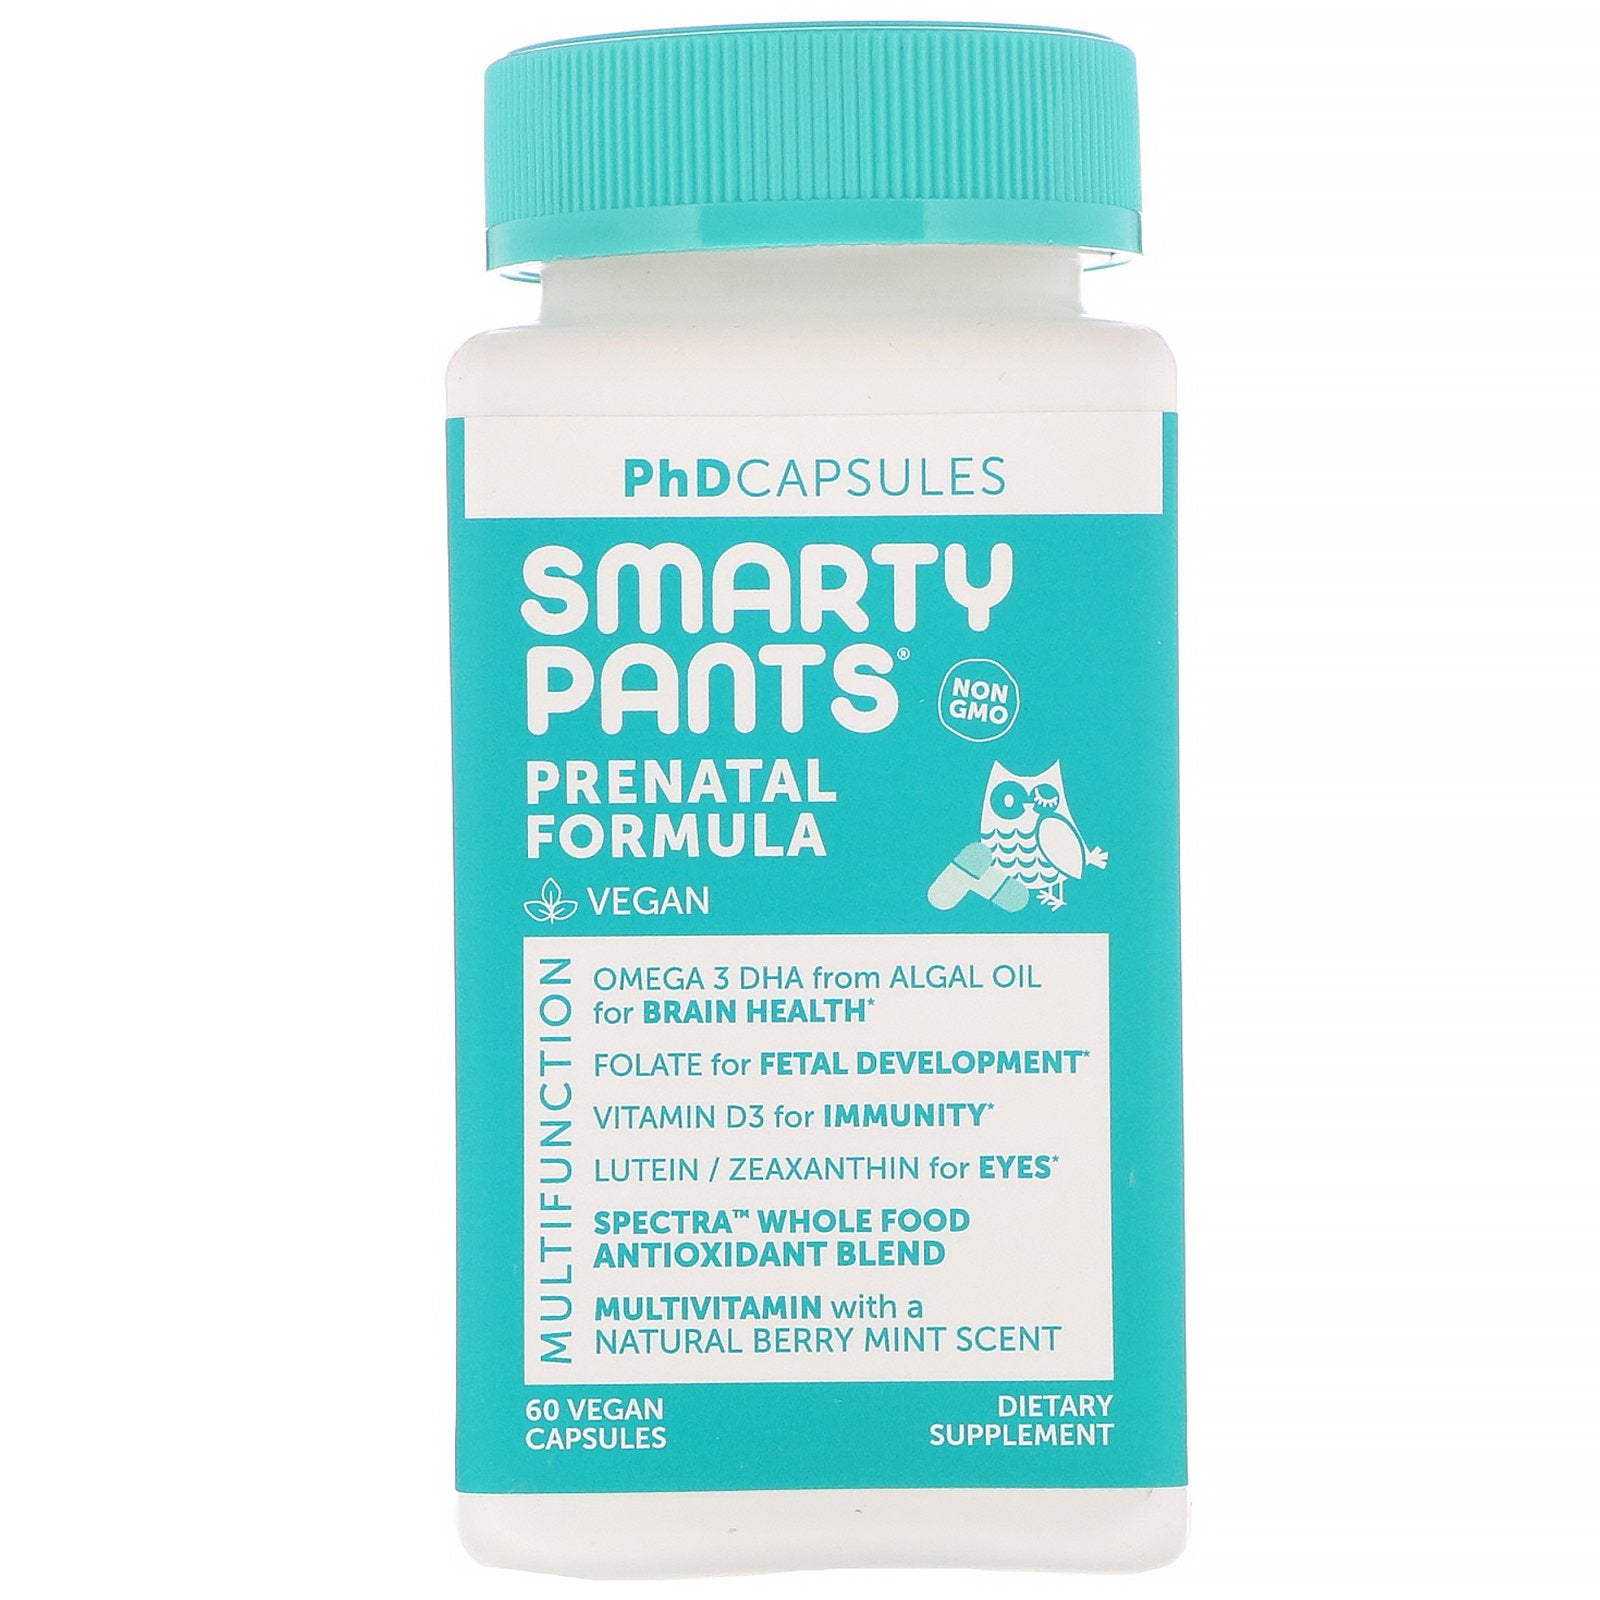 SmartyPants, PhD Capsules, Prenatal Formula, 60 Vegan Capsules